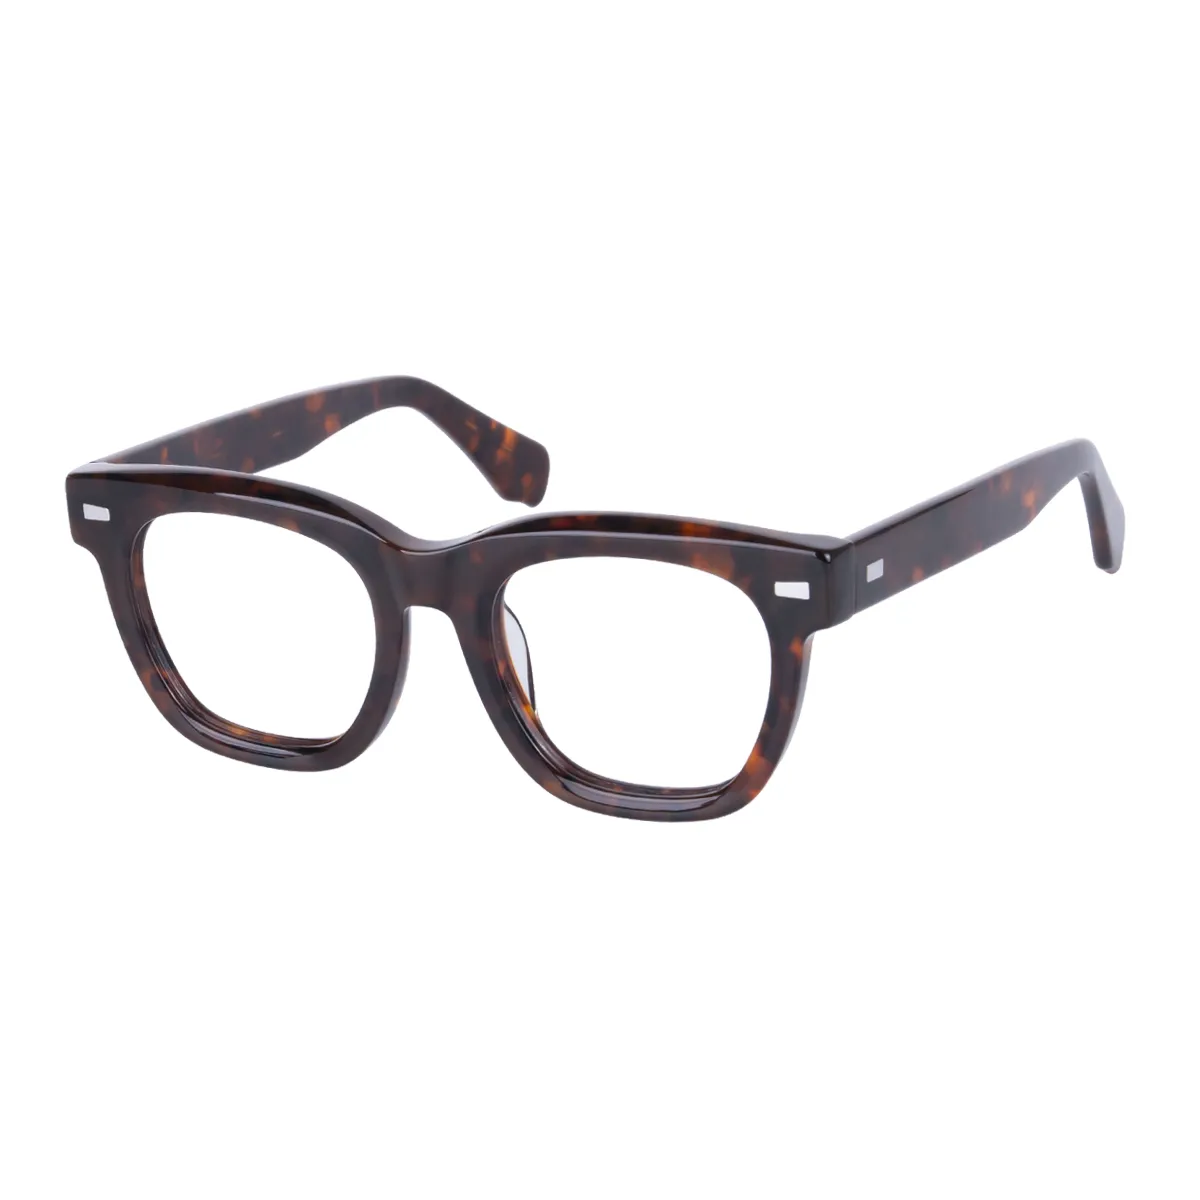 Morty - Square Tortoiseshell Glasses for Men & Women - EFE